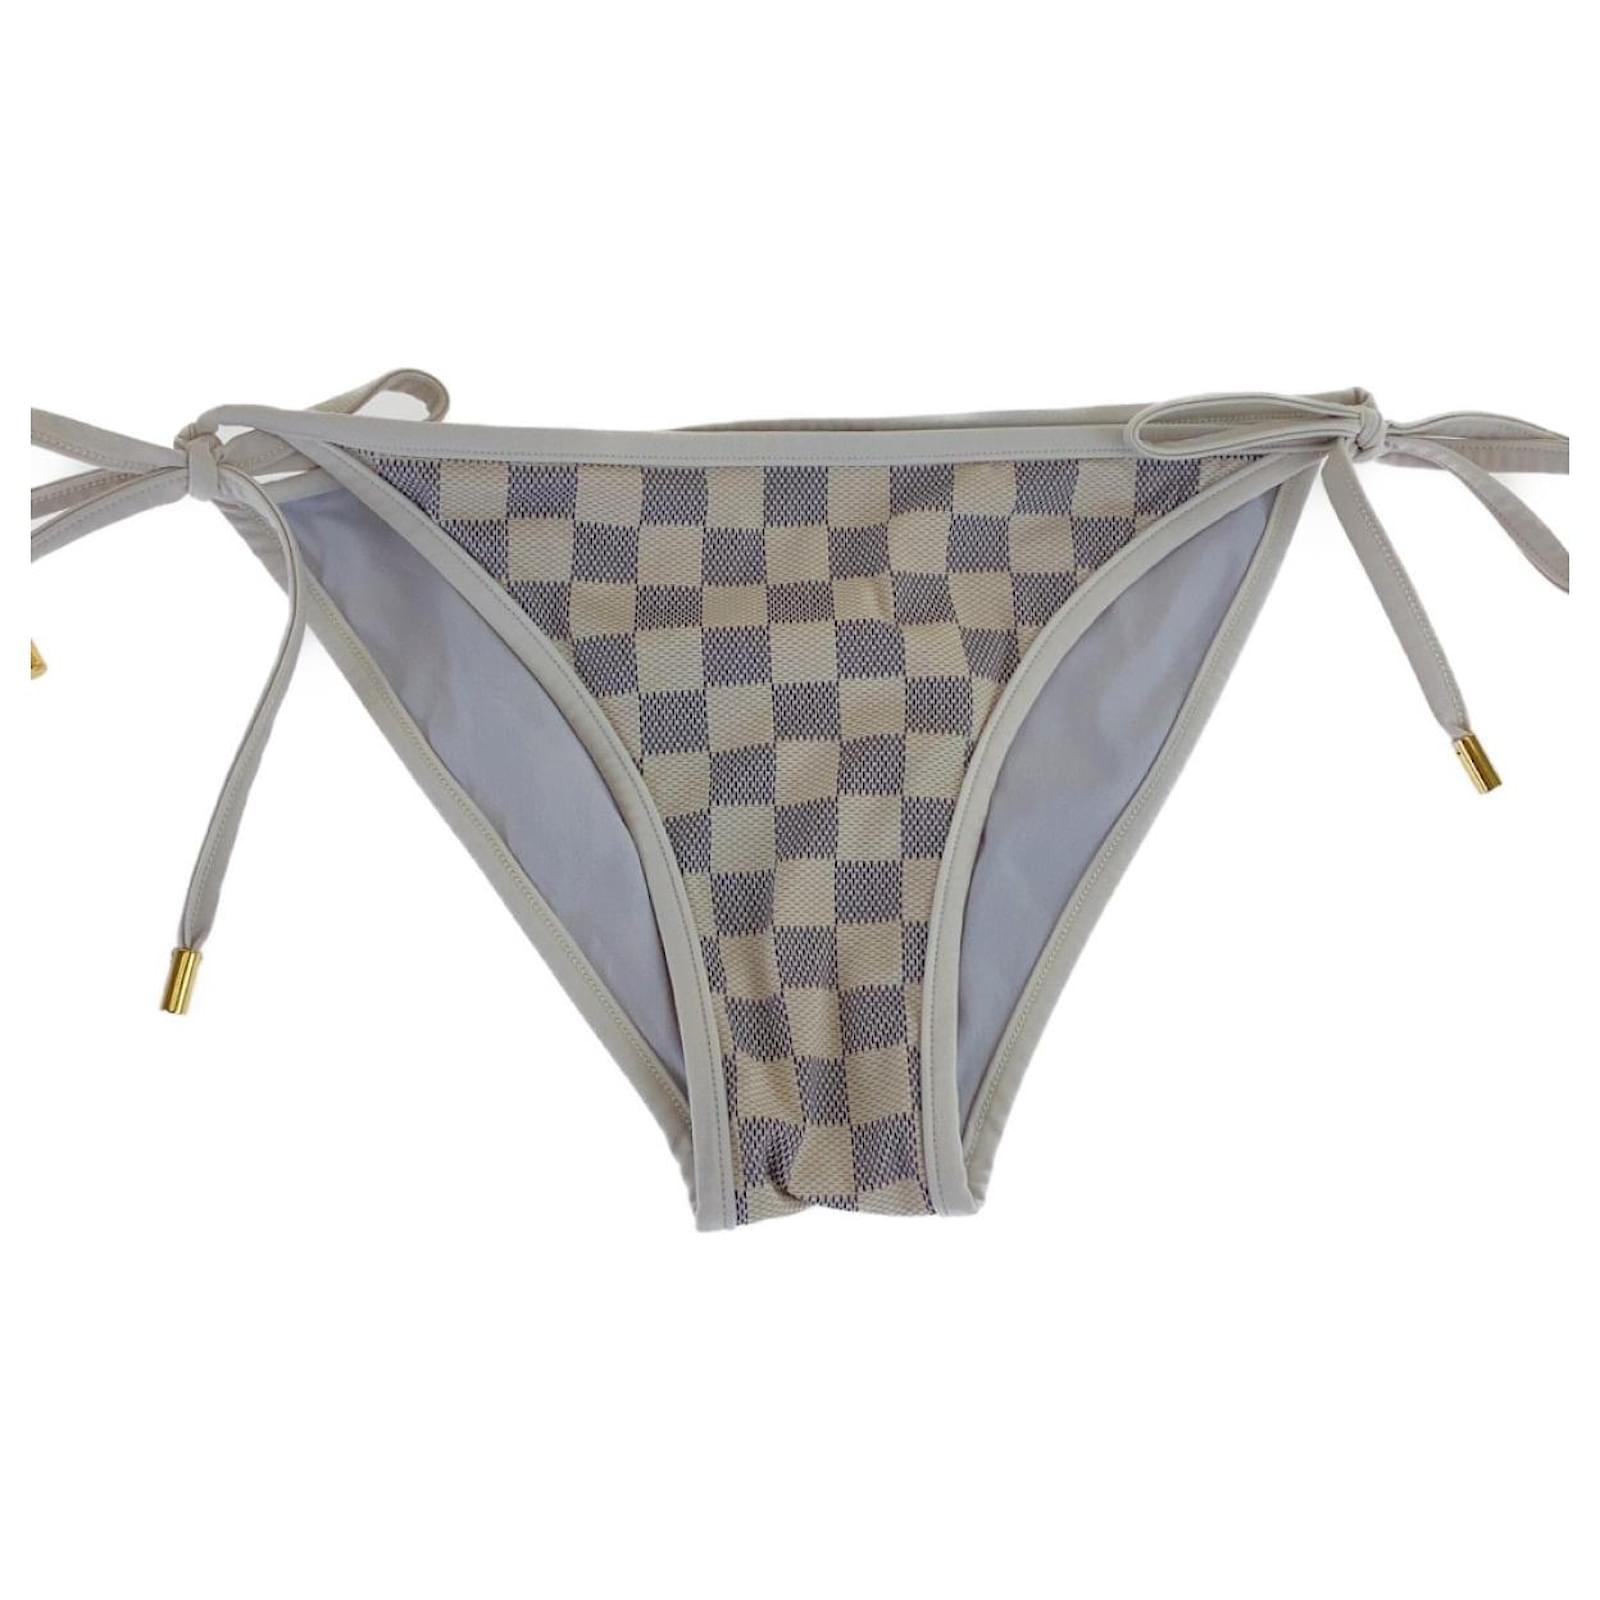 LOUIS VUITTON Damier Azur White Nylon/Polyurethane Swimsuit Bikini